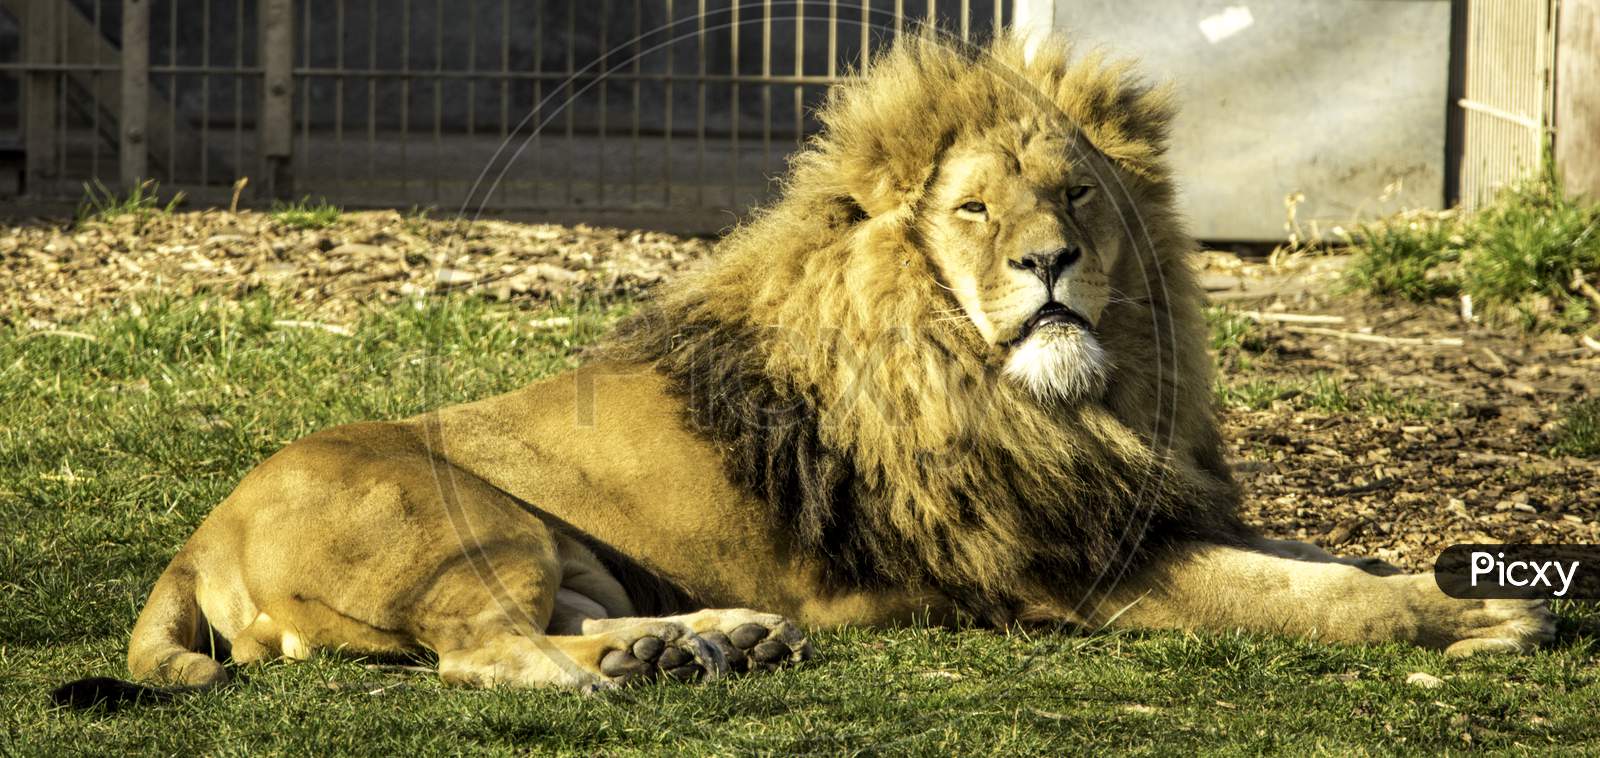 Lion King